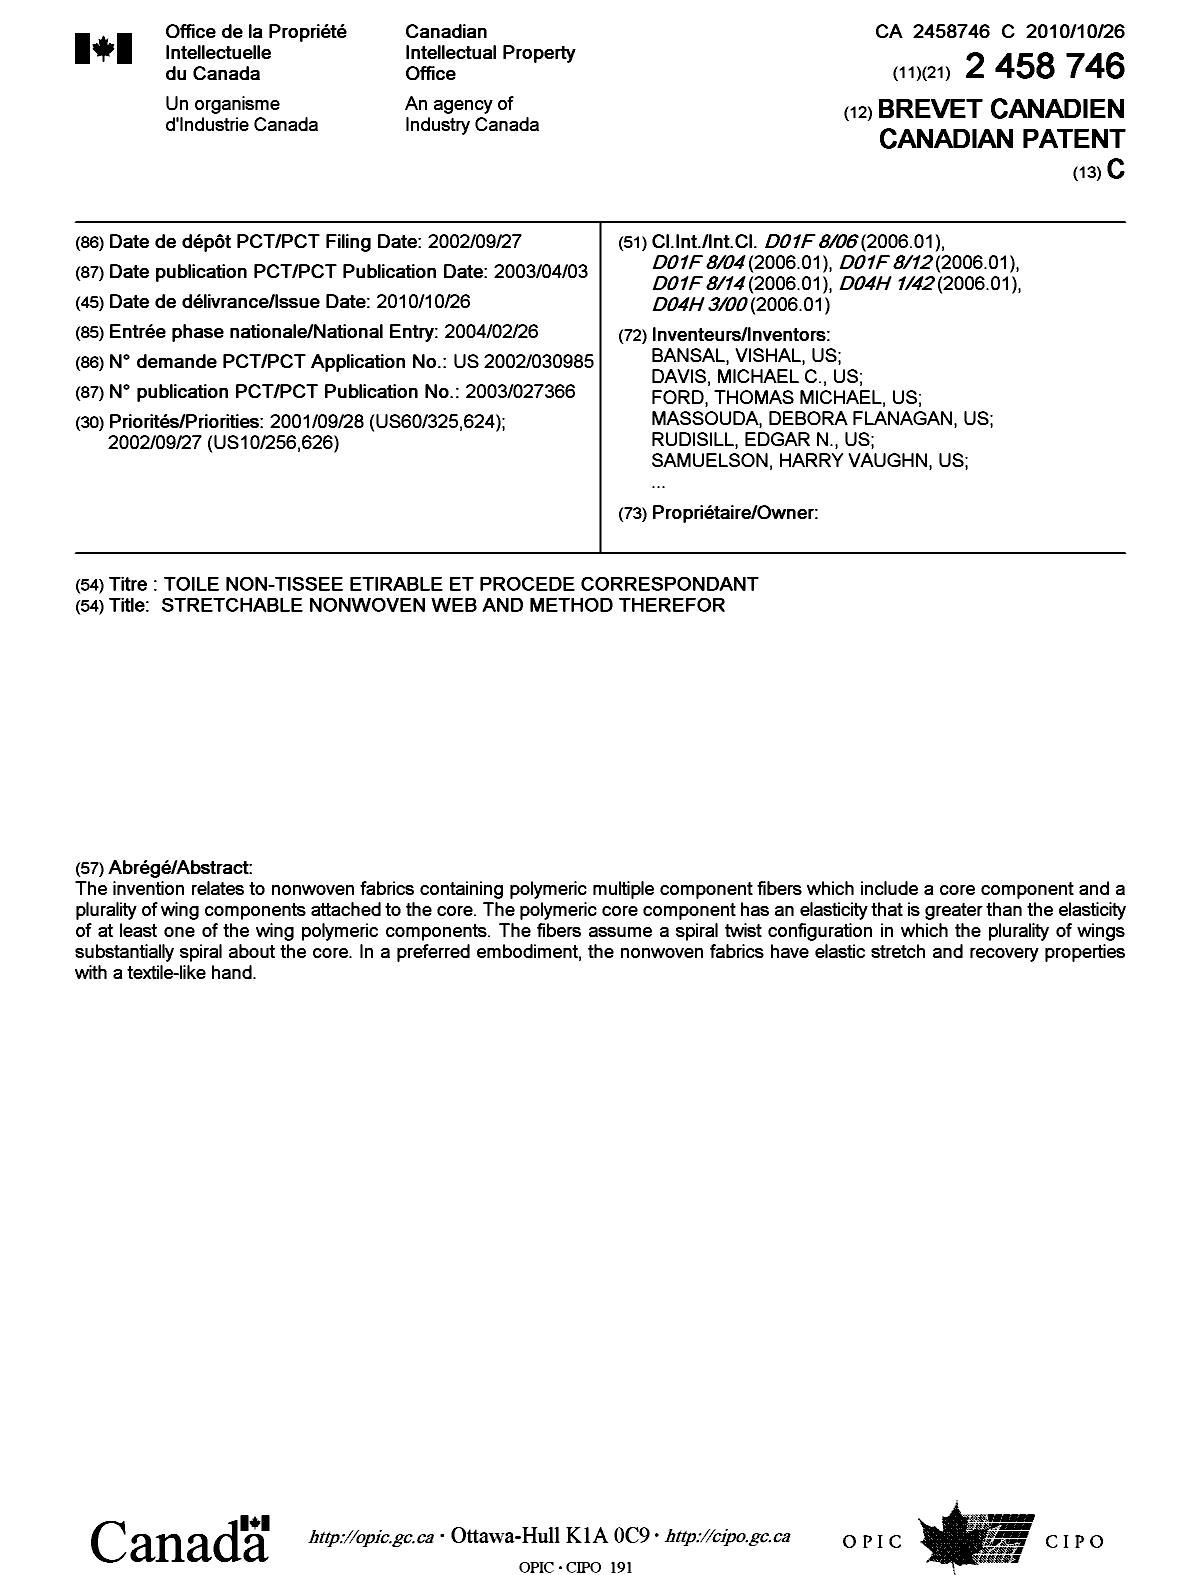 Document de brevet canadien 2458746. Page couverture 20101006. Image 1 de 2